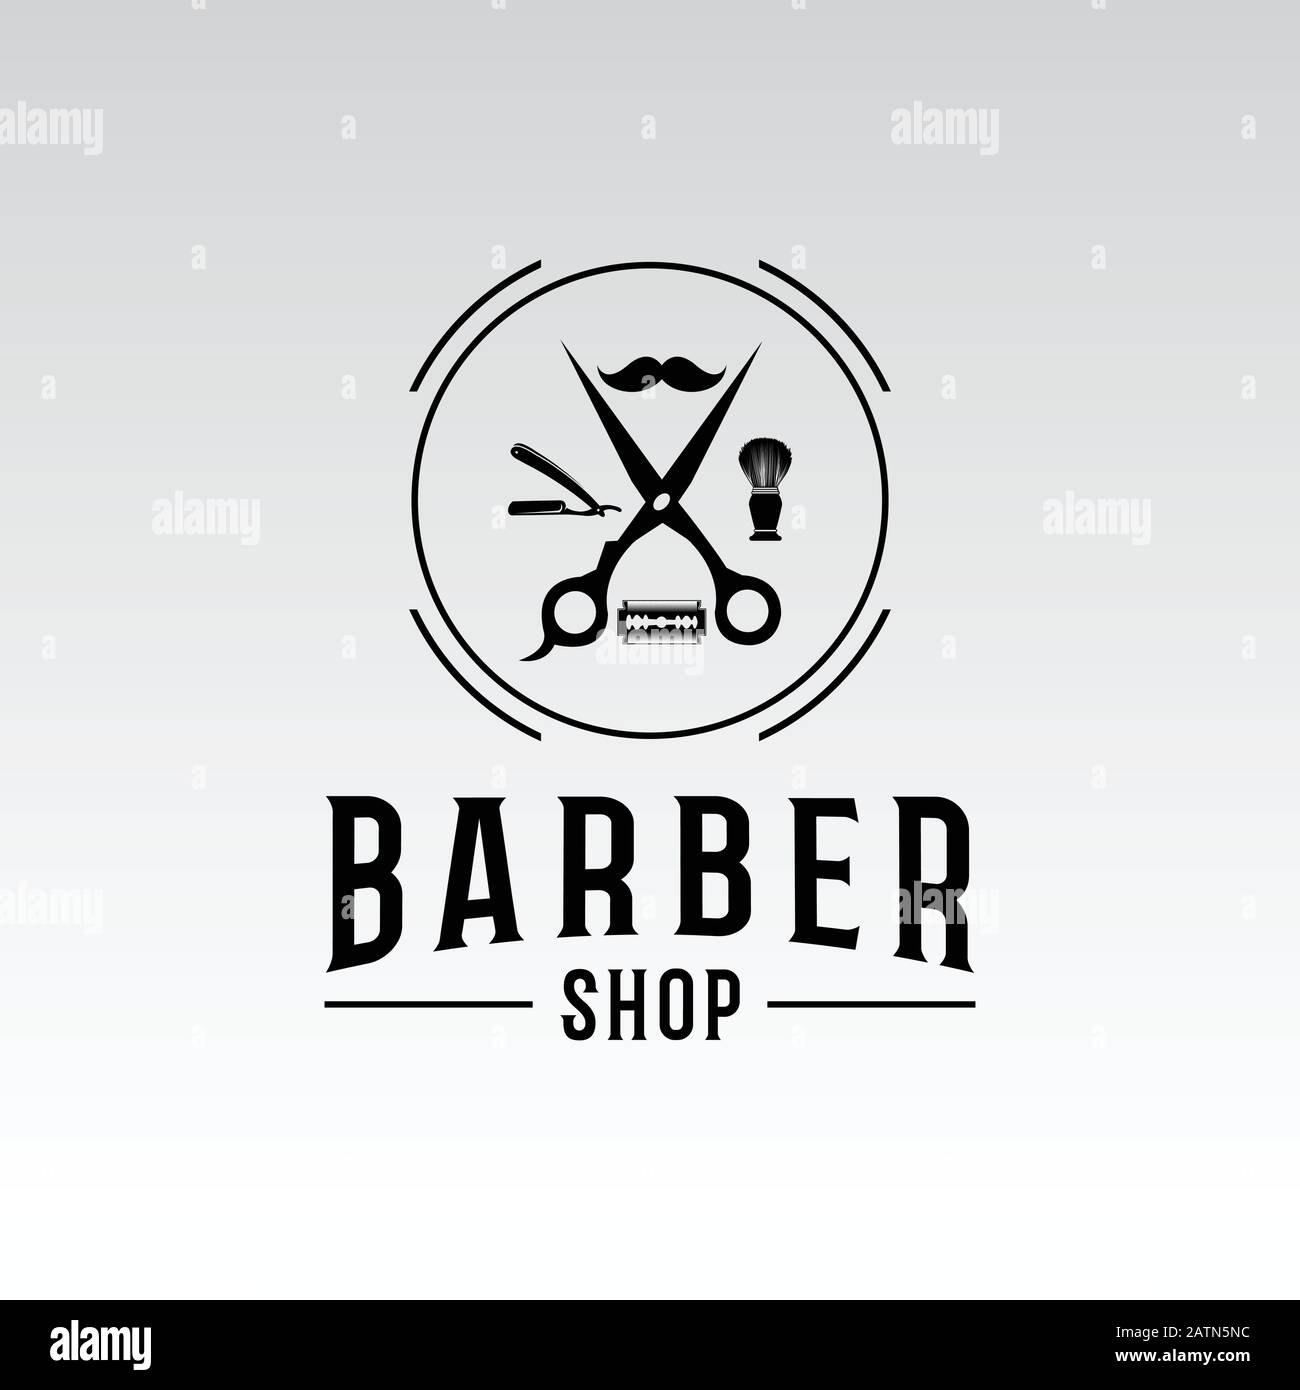 Barbershop logo and barber shop vintage label and badge illustration Stock Vector